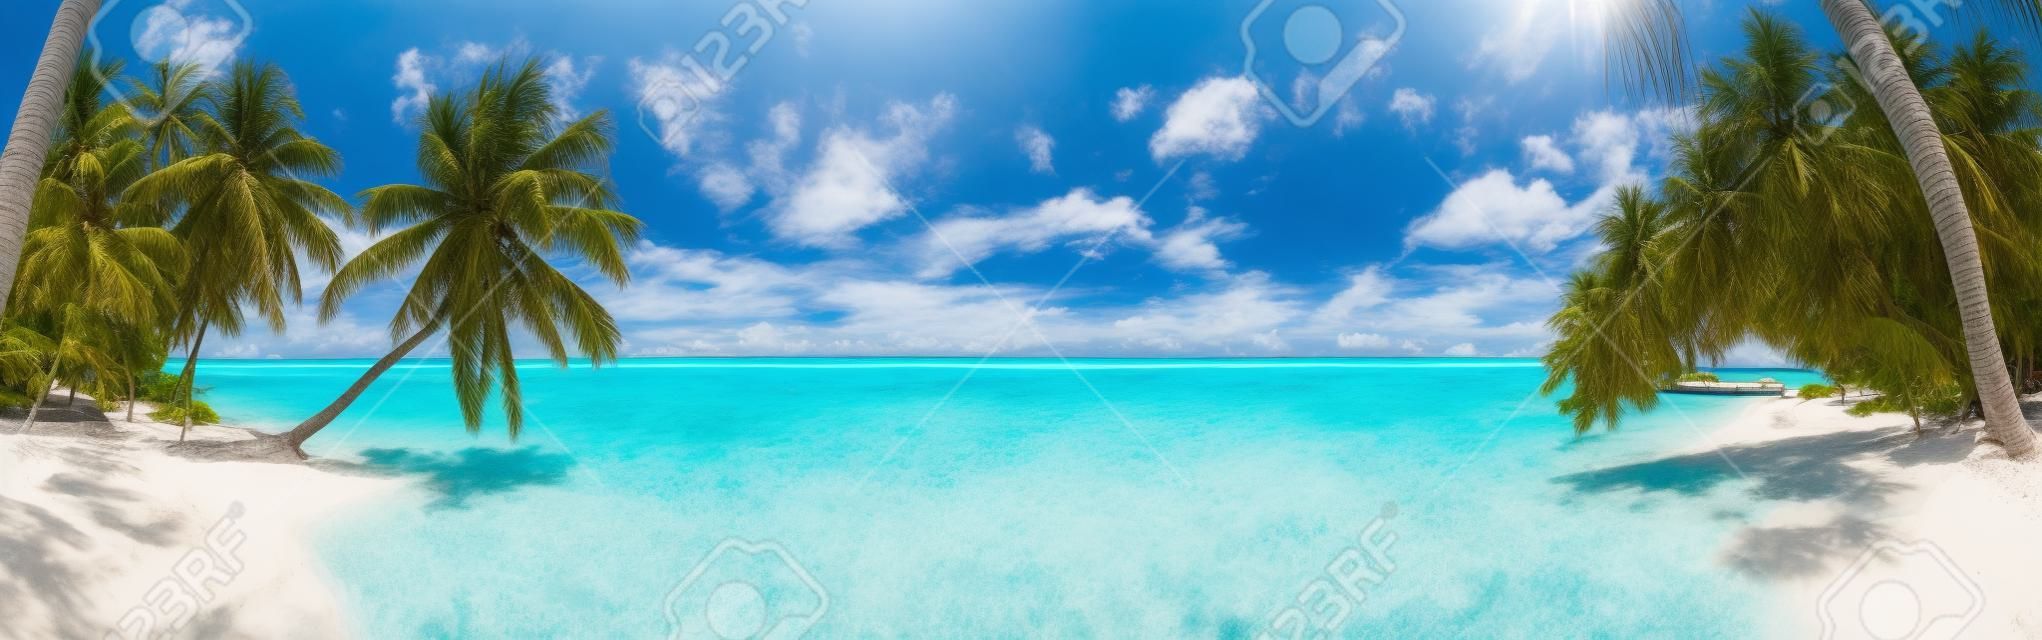 Panorama de praia nas Maldivas com céu azul, palmeiras e água azul-turquesa